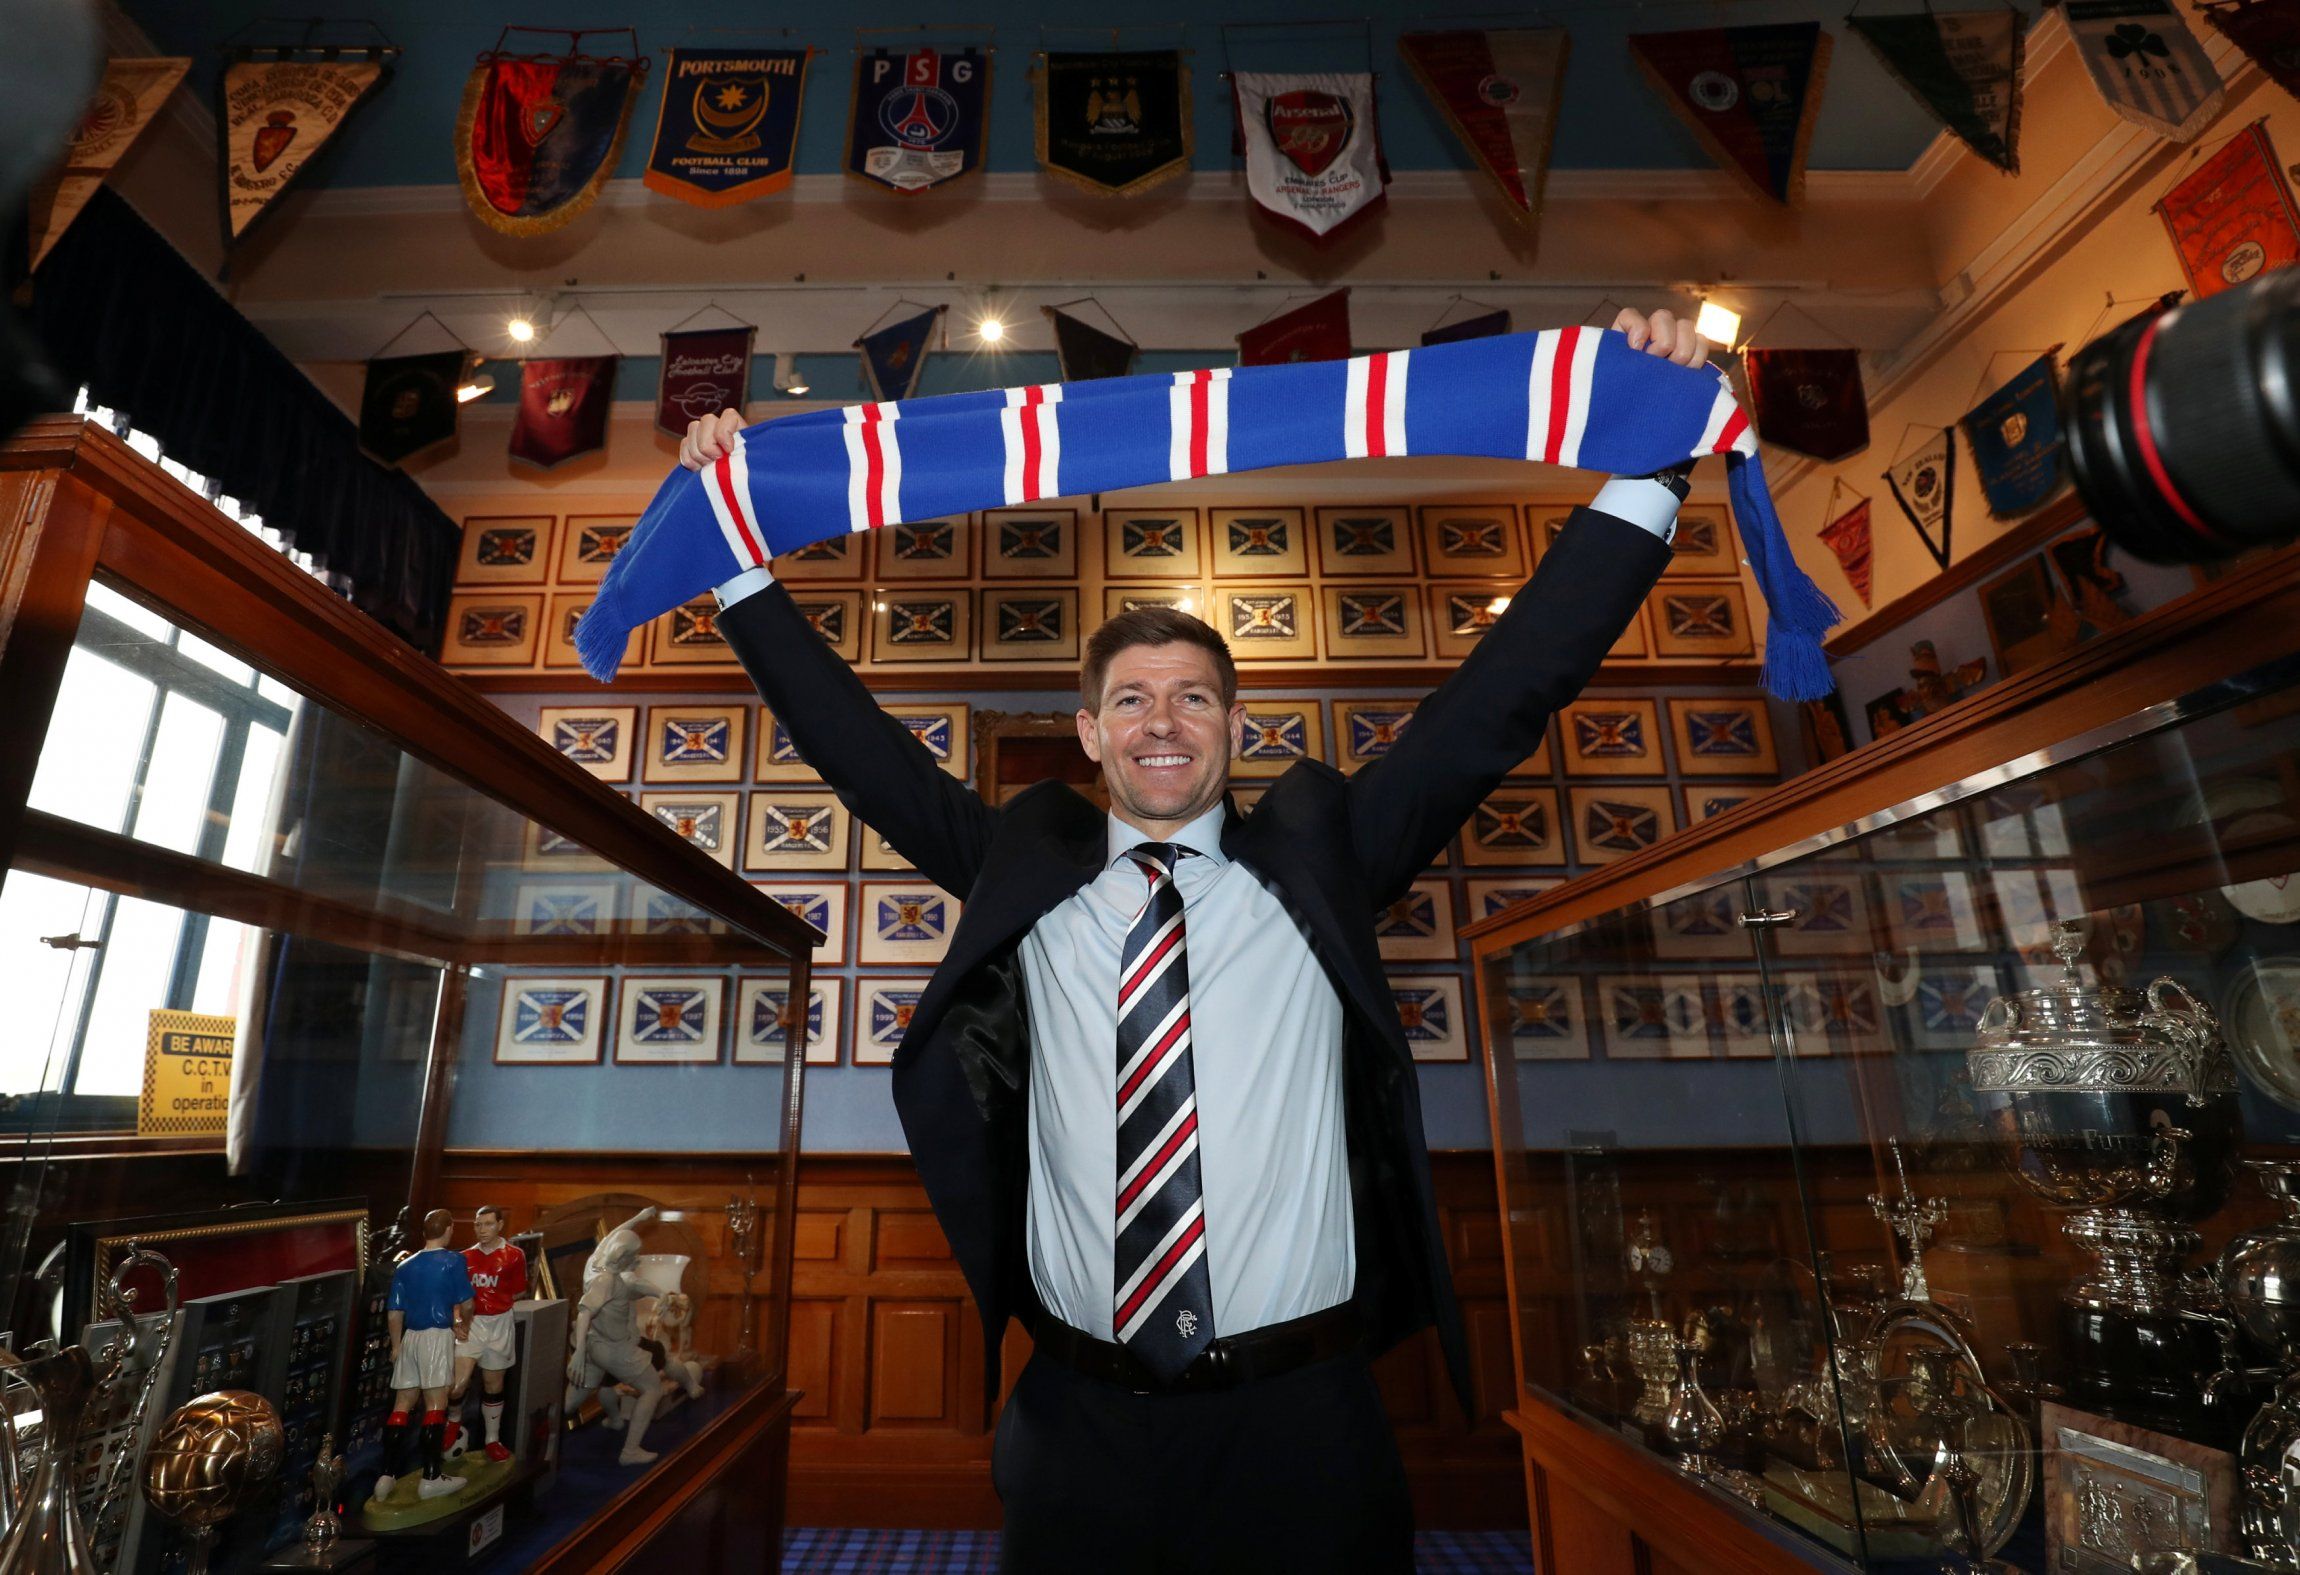 Steven Gerrard lifts a Rangers scarf